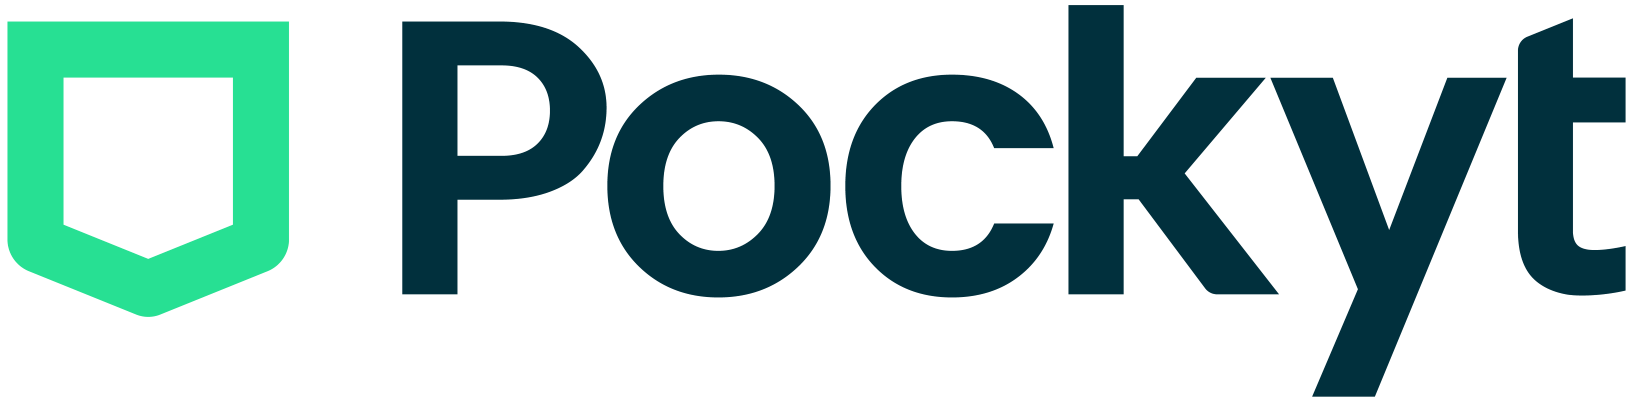 pocky logo